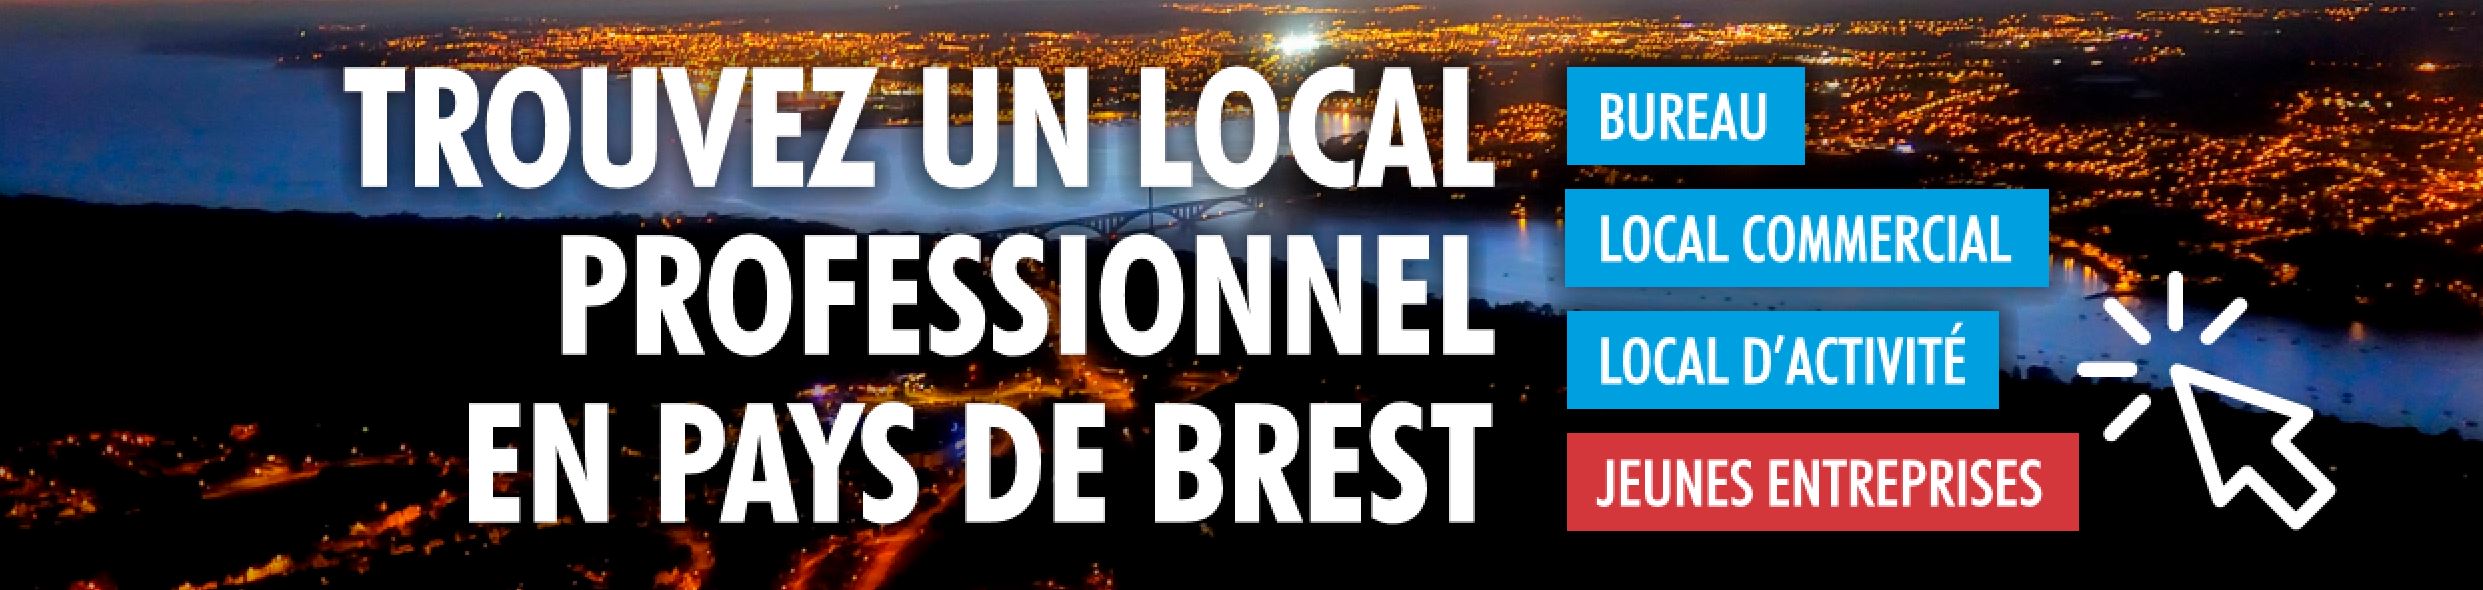 Bureau, commerce, industrie, jeunes entreprises en Pays de Brest